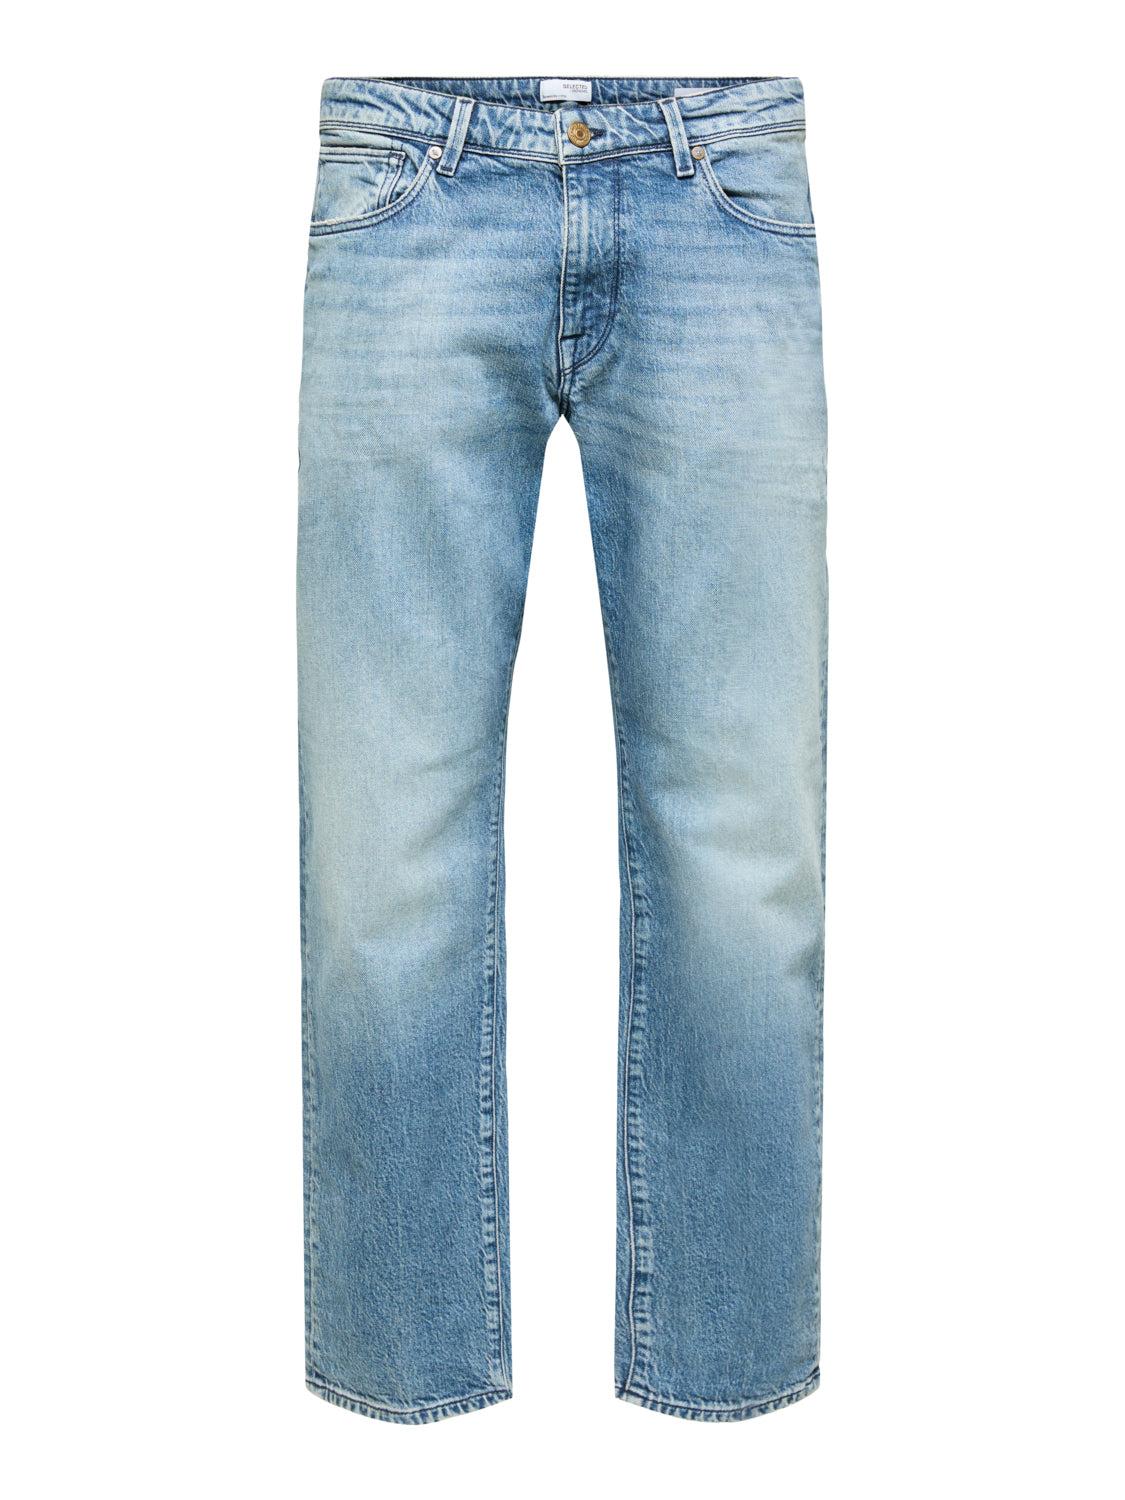 SLHSTRAIGHT-SCOTT Jeans - Light Blue Denim